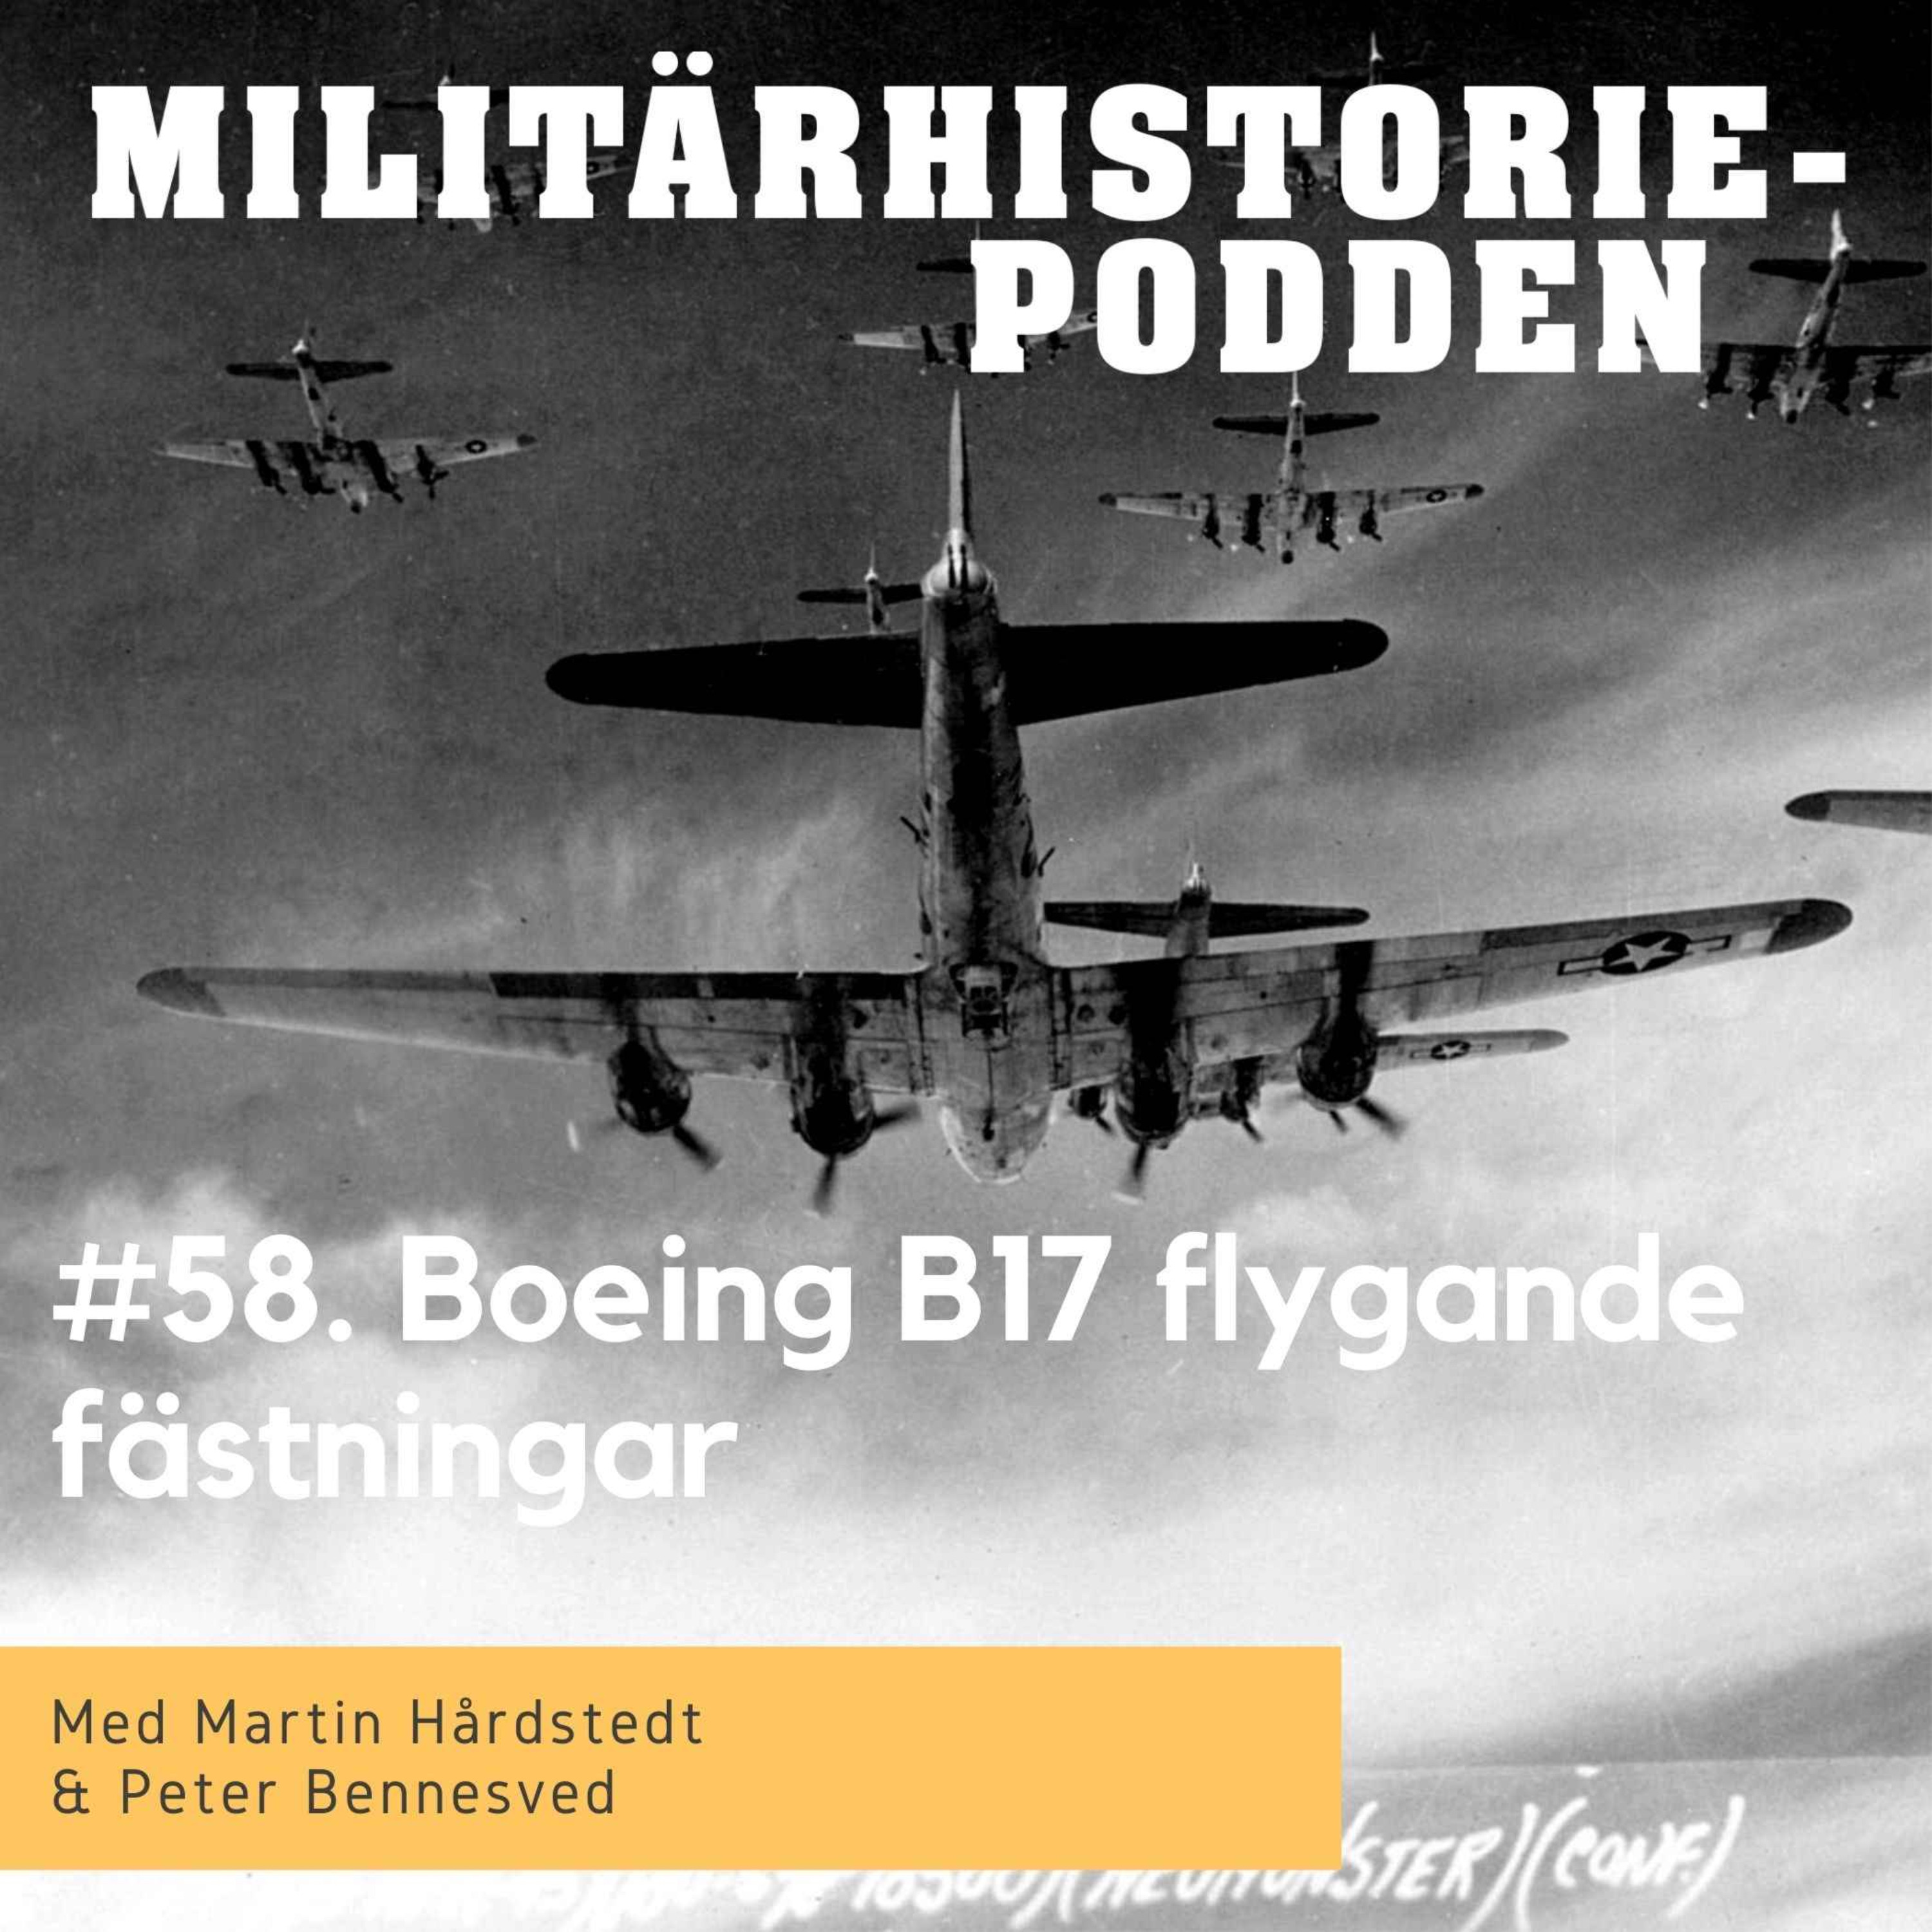 B17 flygande fästningars unika roll i andra världskriget